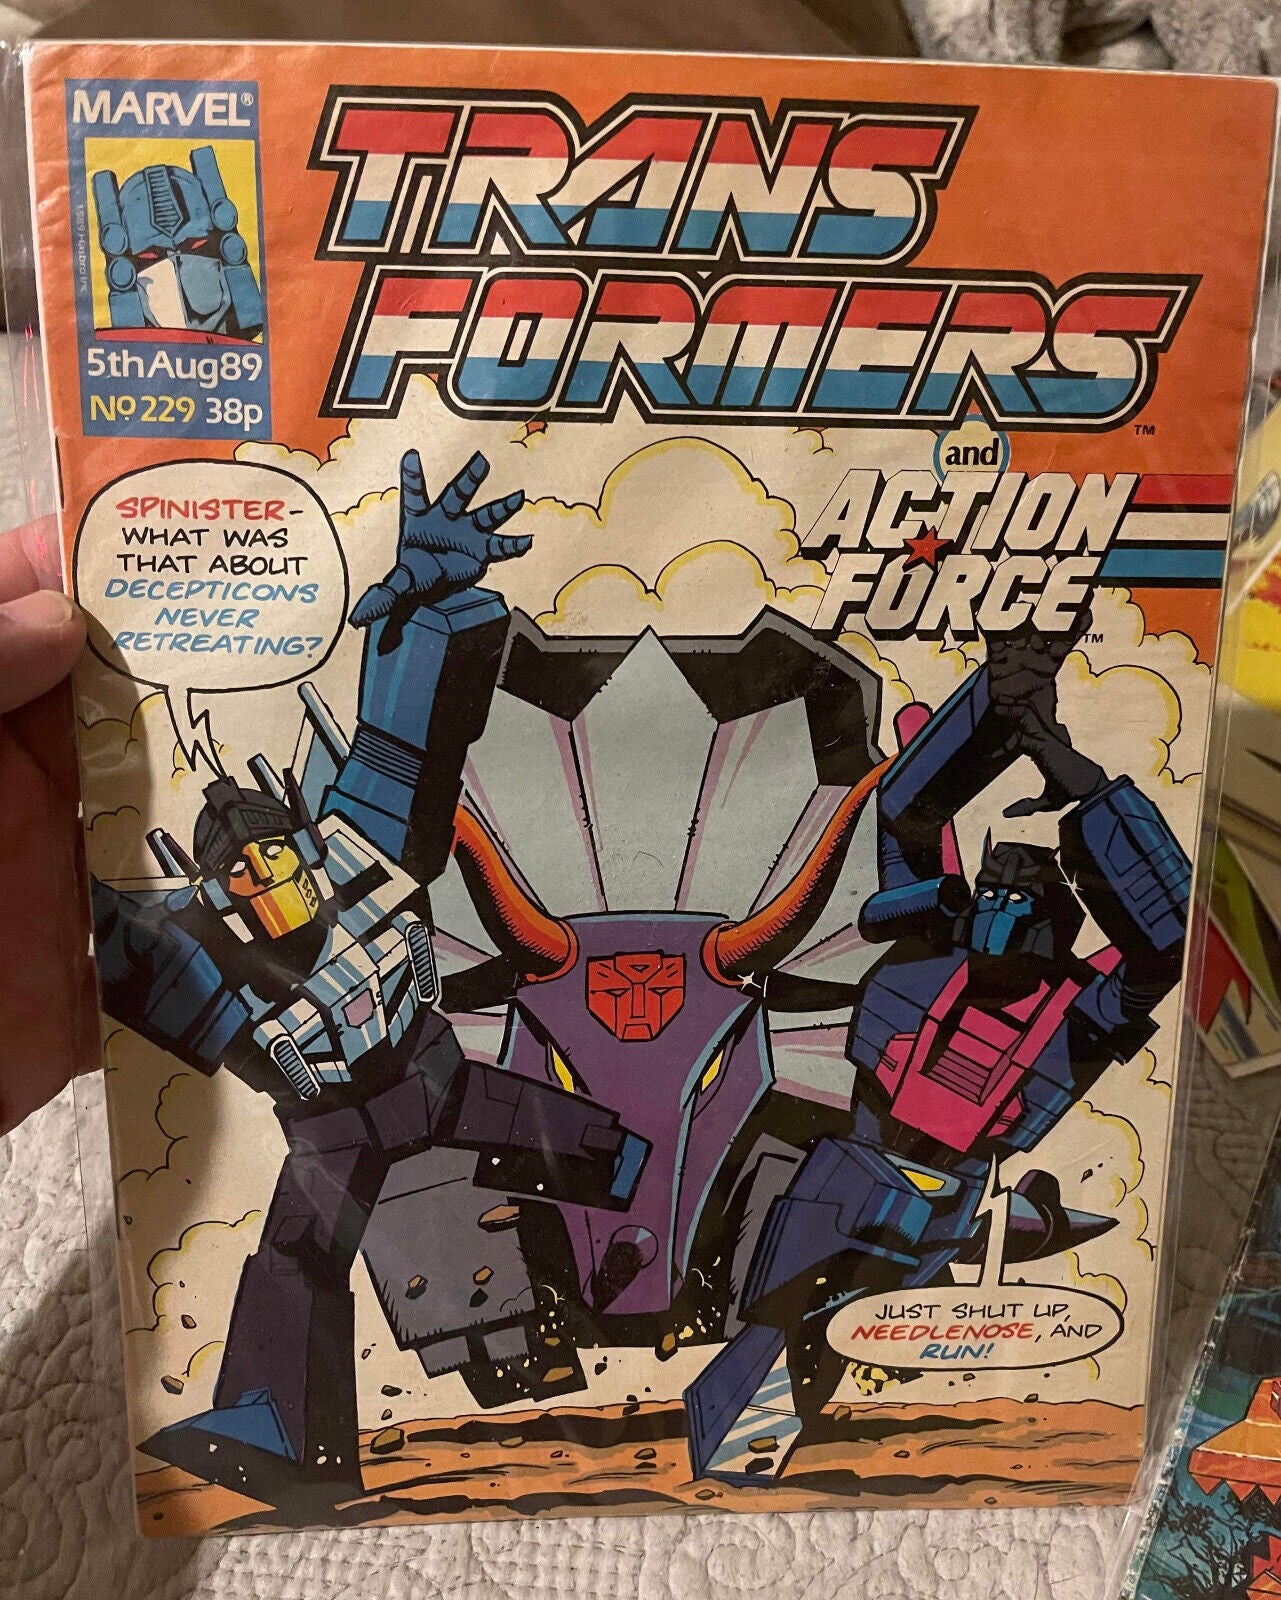 Transformers #229 Marvel UK Magazine 1989 Action Force G.I. Joe